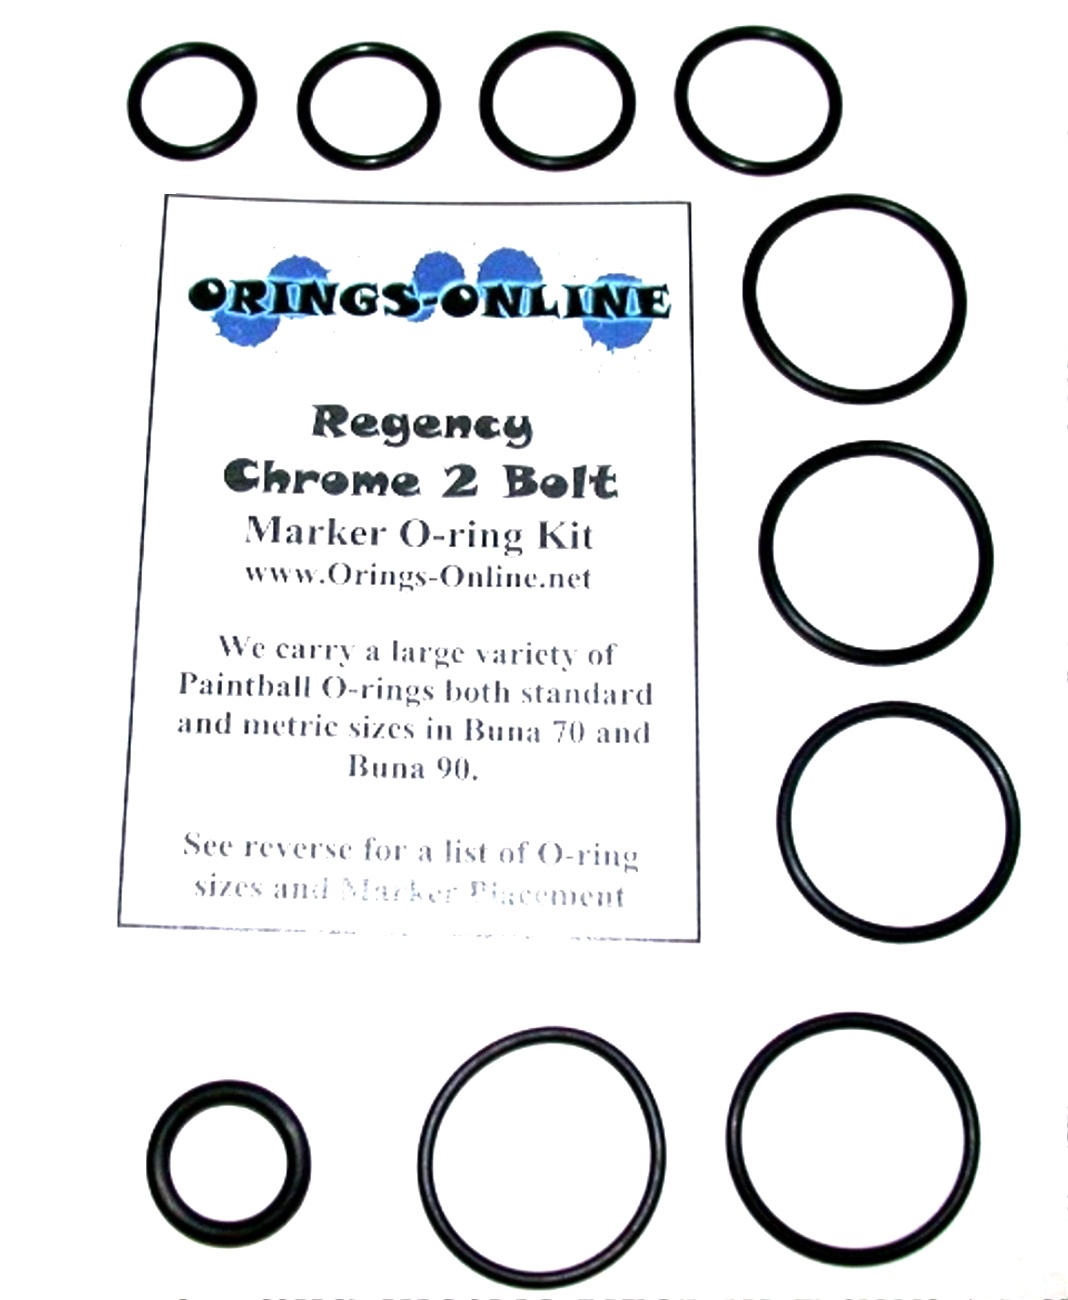 Regency Chrome 2 Bolt Marker O-ring Kit